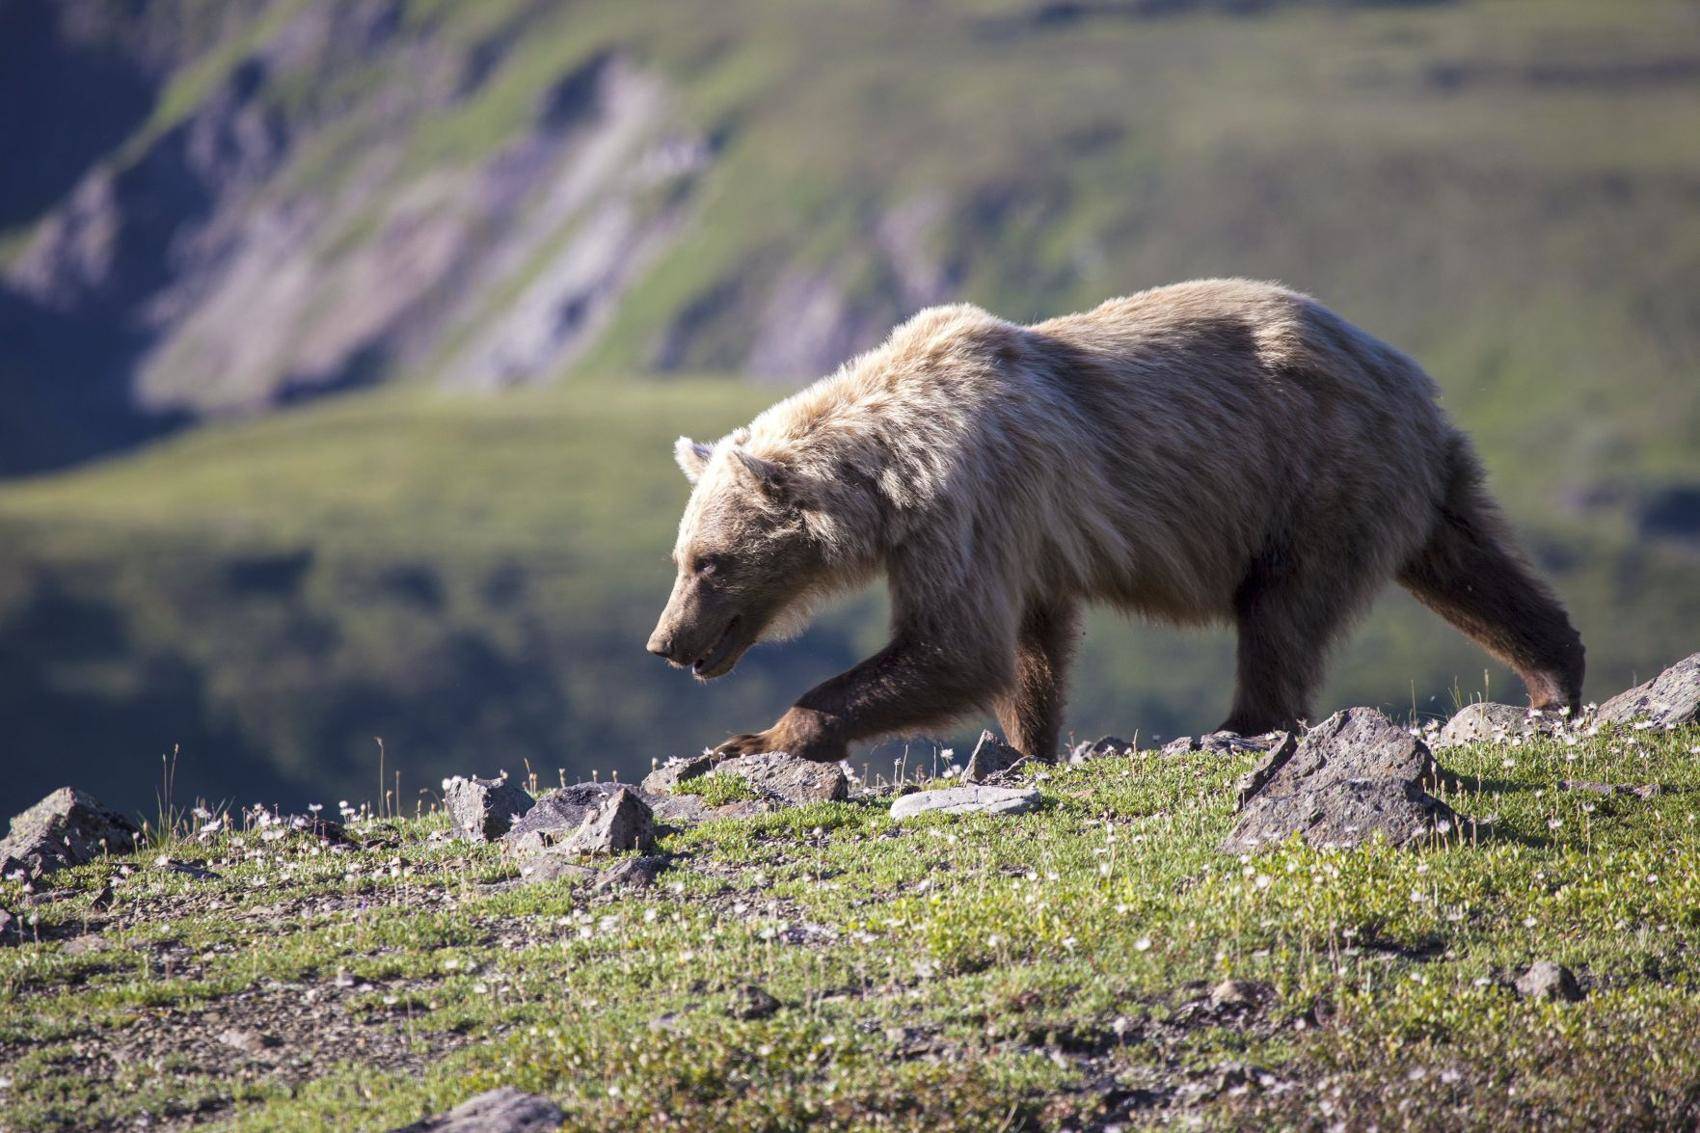 На Аляске одного из охотников придавила туша медведя. Мужчина доставлен в больницу в тяжелом состоянии. Медведь на фото